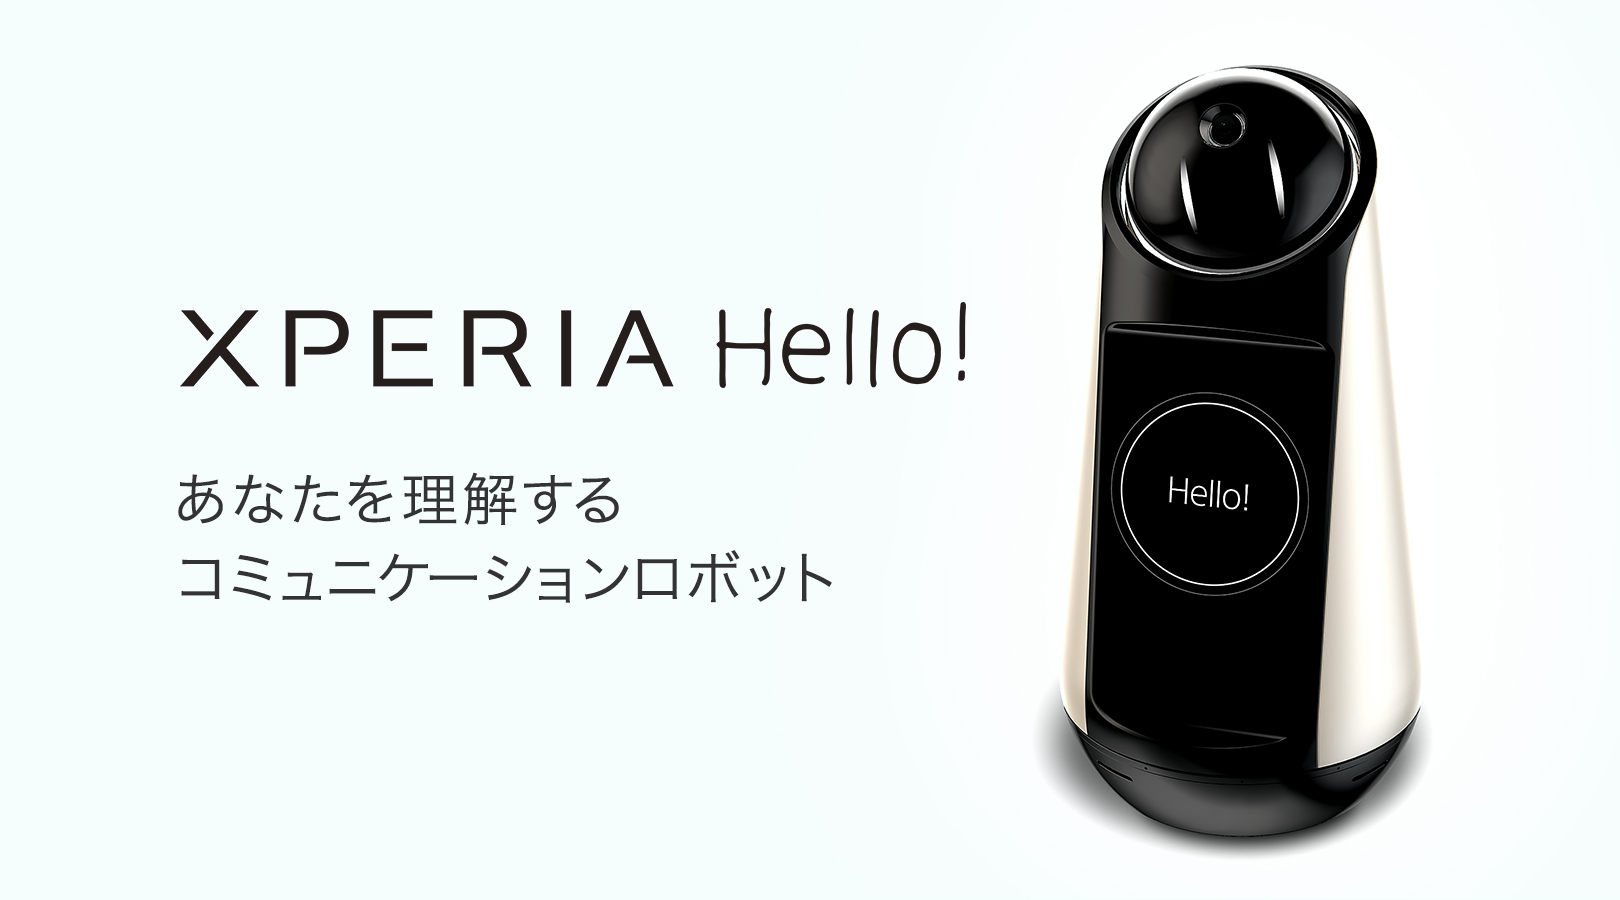 Xperia Hello!（エクスペリア ハロー）G1209 | スマートプロダクト